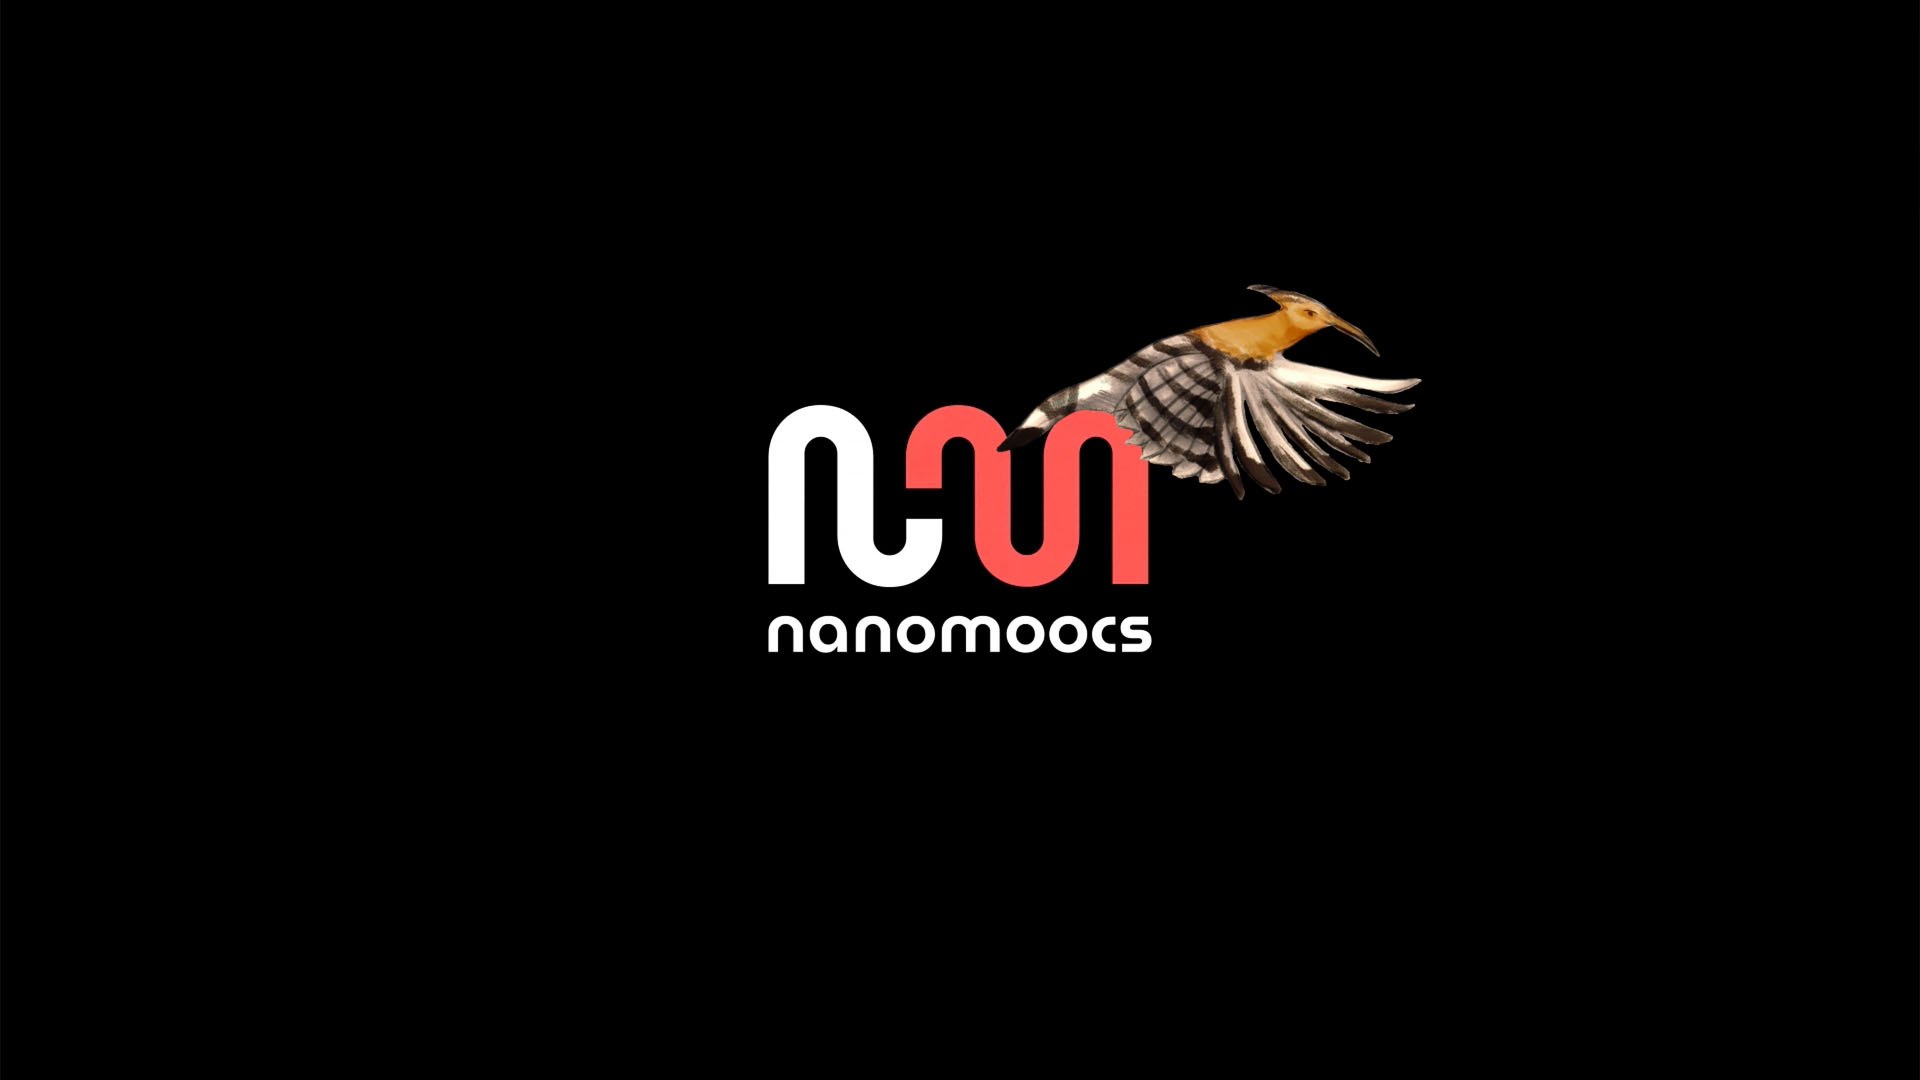 Nanomoocs – Què s’espera del teu pla?